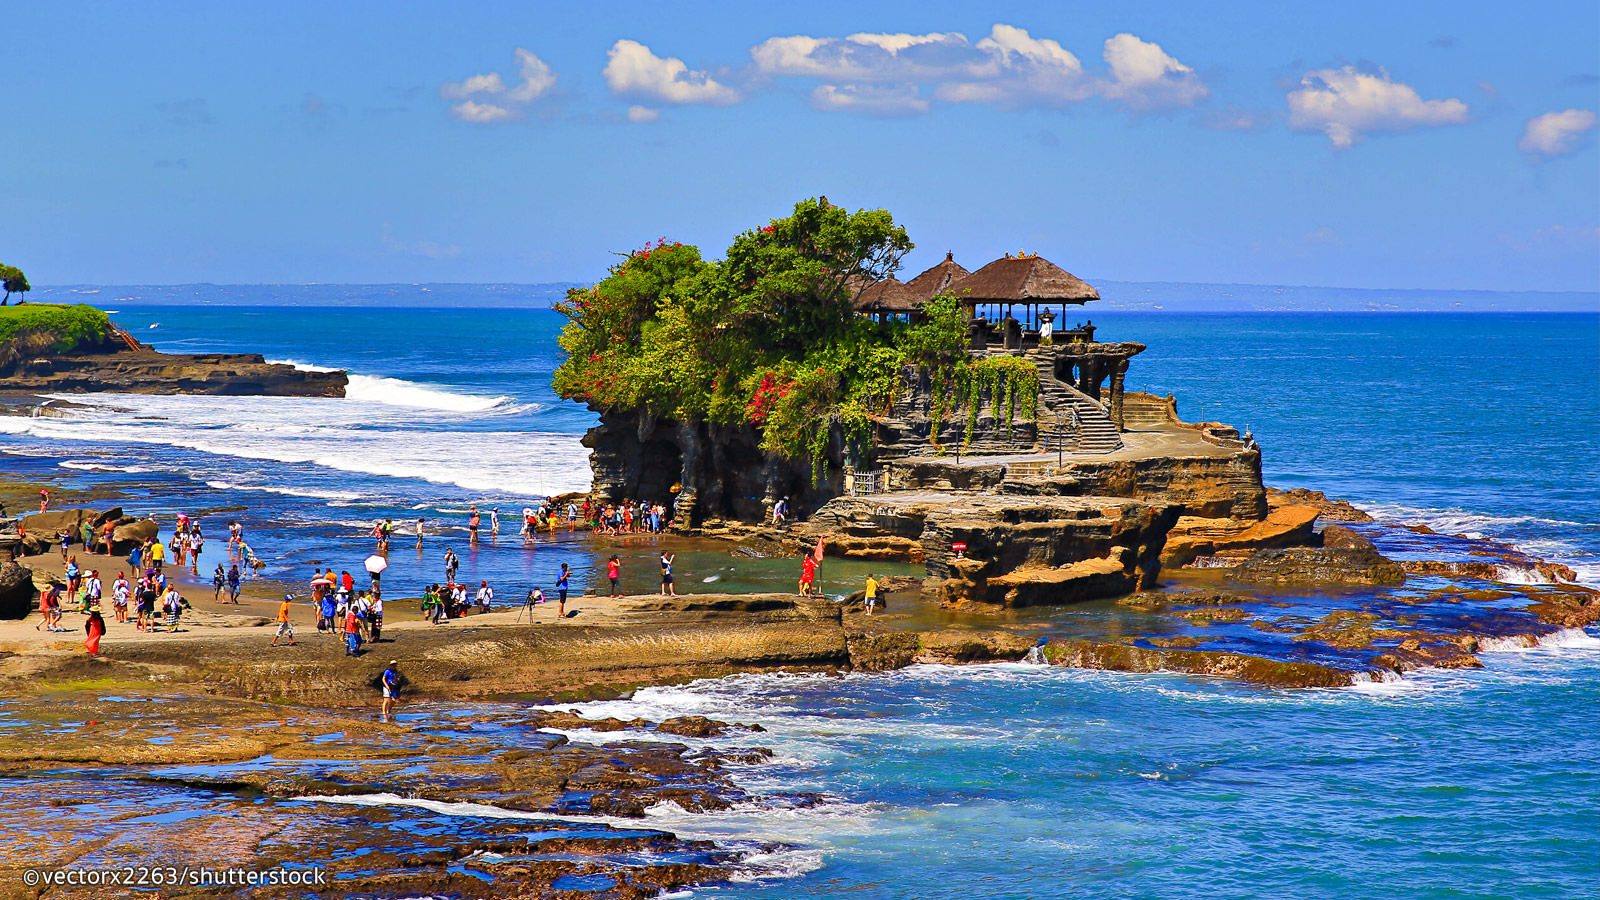 10 Tempat Wisata di Tabanan Bali yang Lagi Hits 2019 Koran